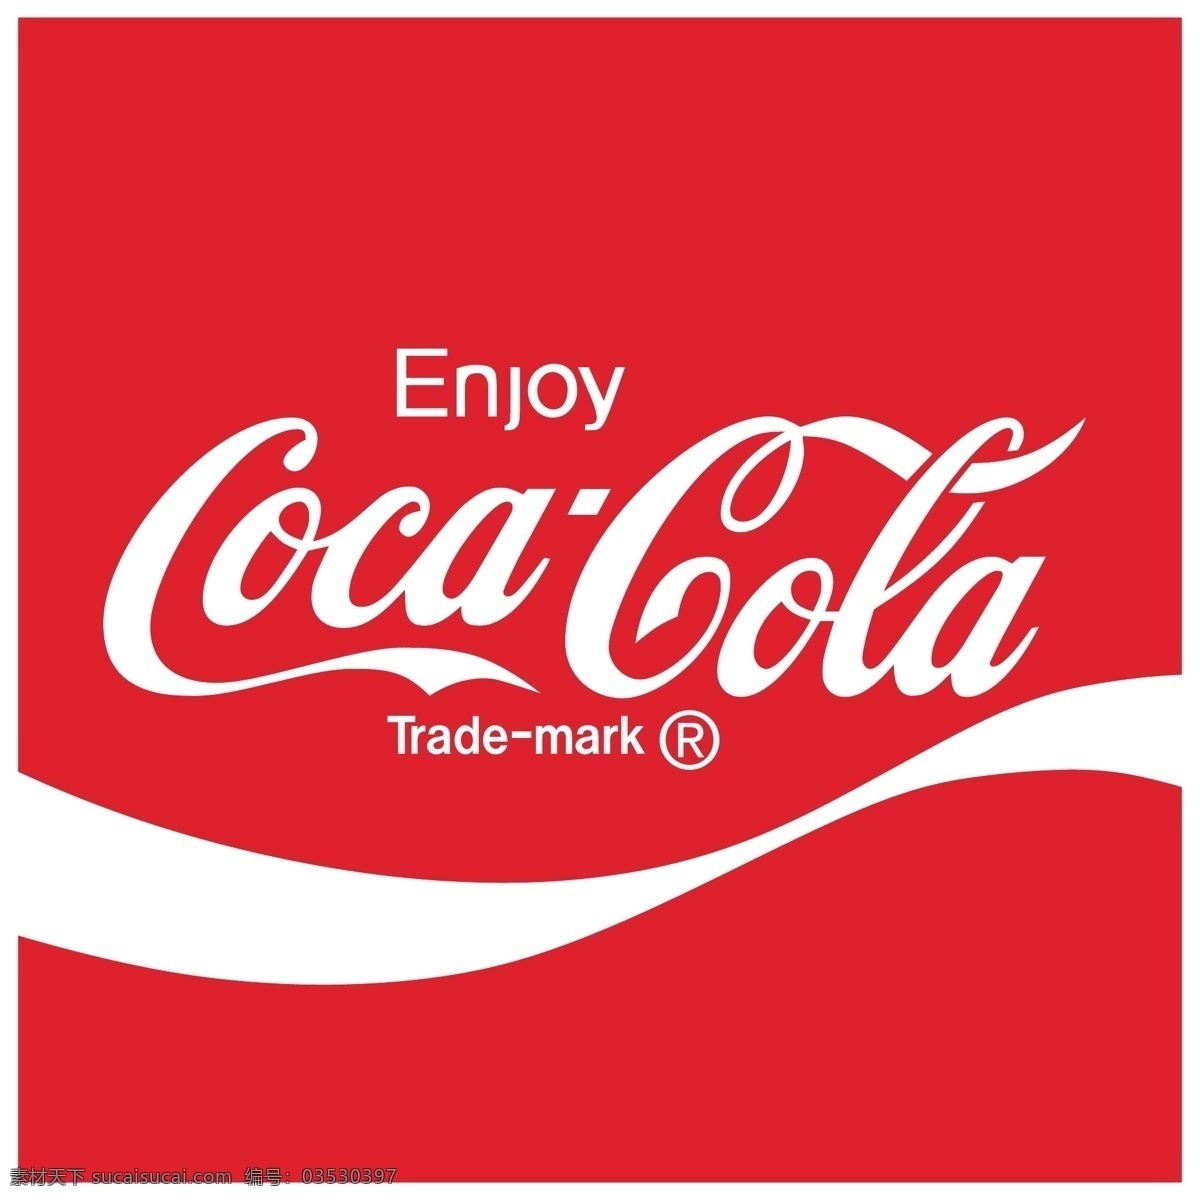 可口可乐 免费 标志 psd源文件 logo设计